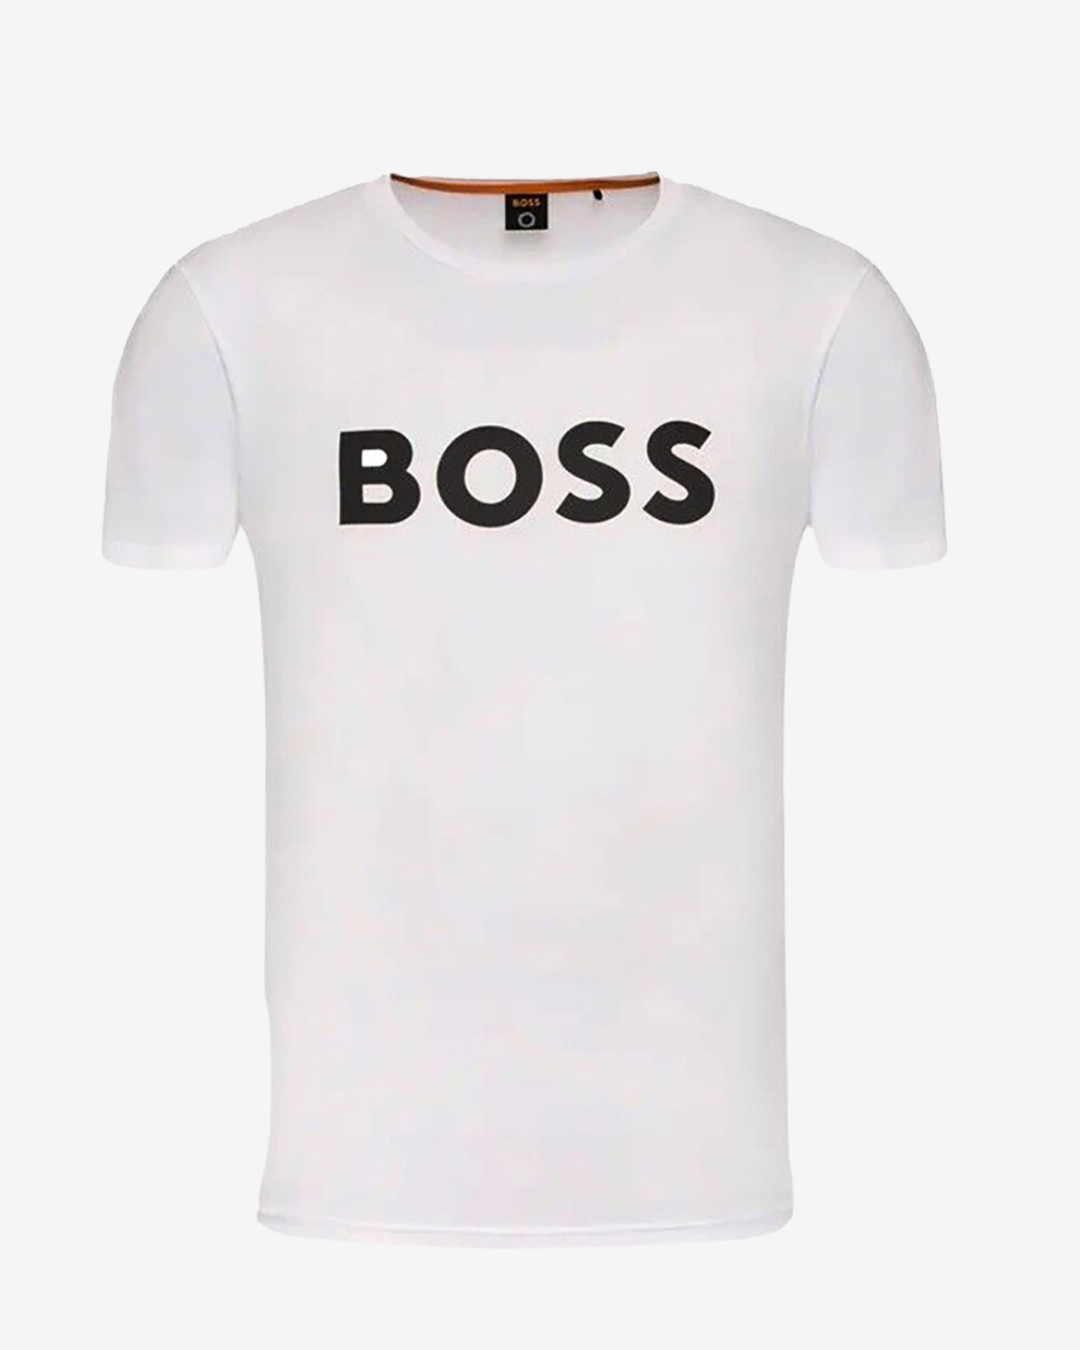 Billede af Hugo Boss Thinking logo t-shirt - Hvid - Str. M - Modish.dk